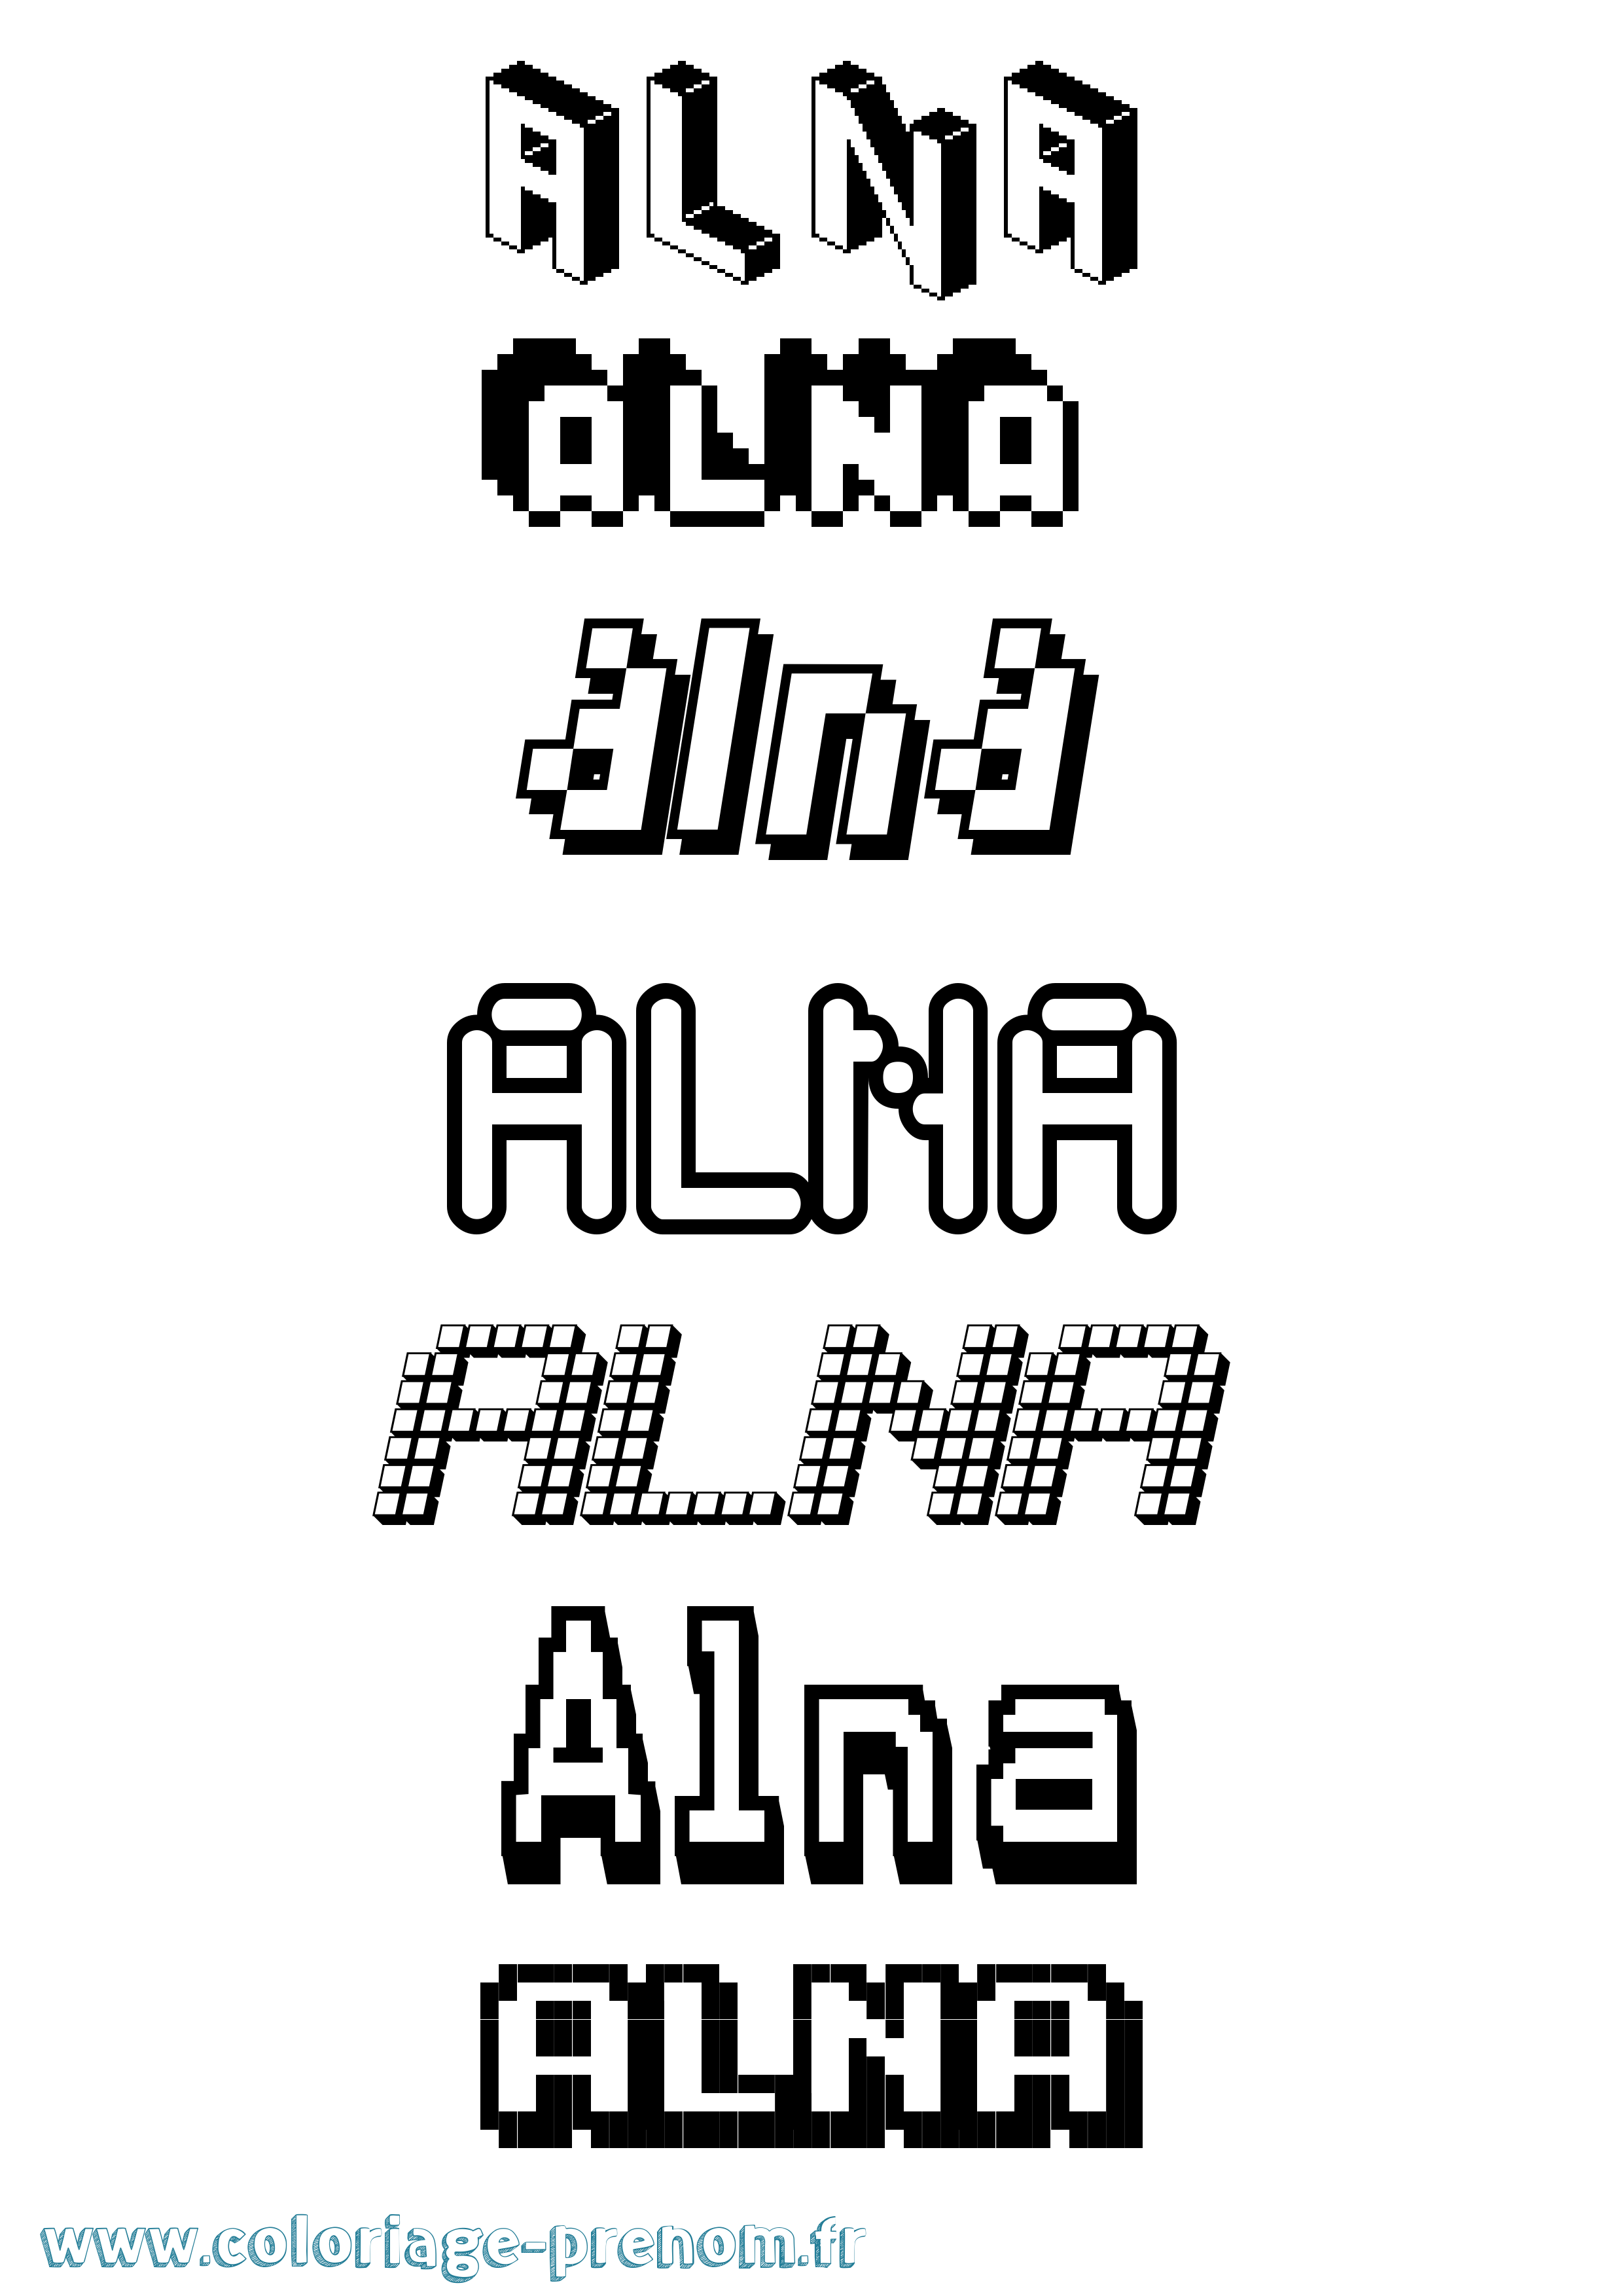 Coloriage prénom Alna Pixel